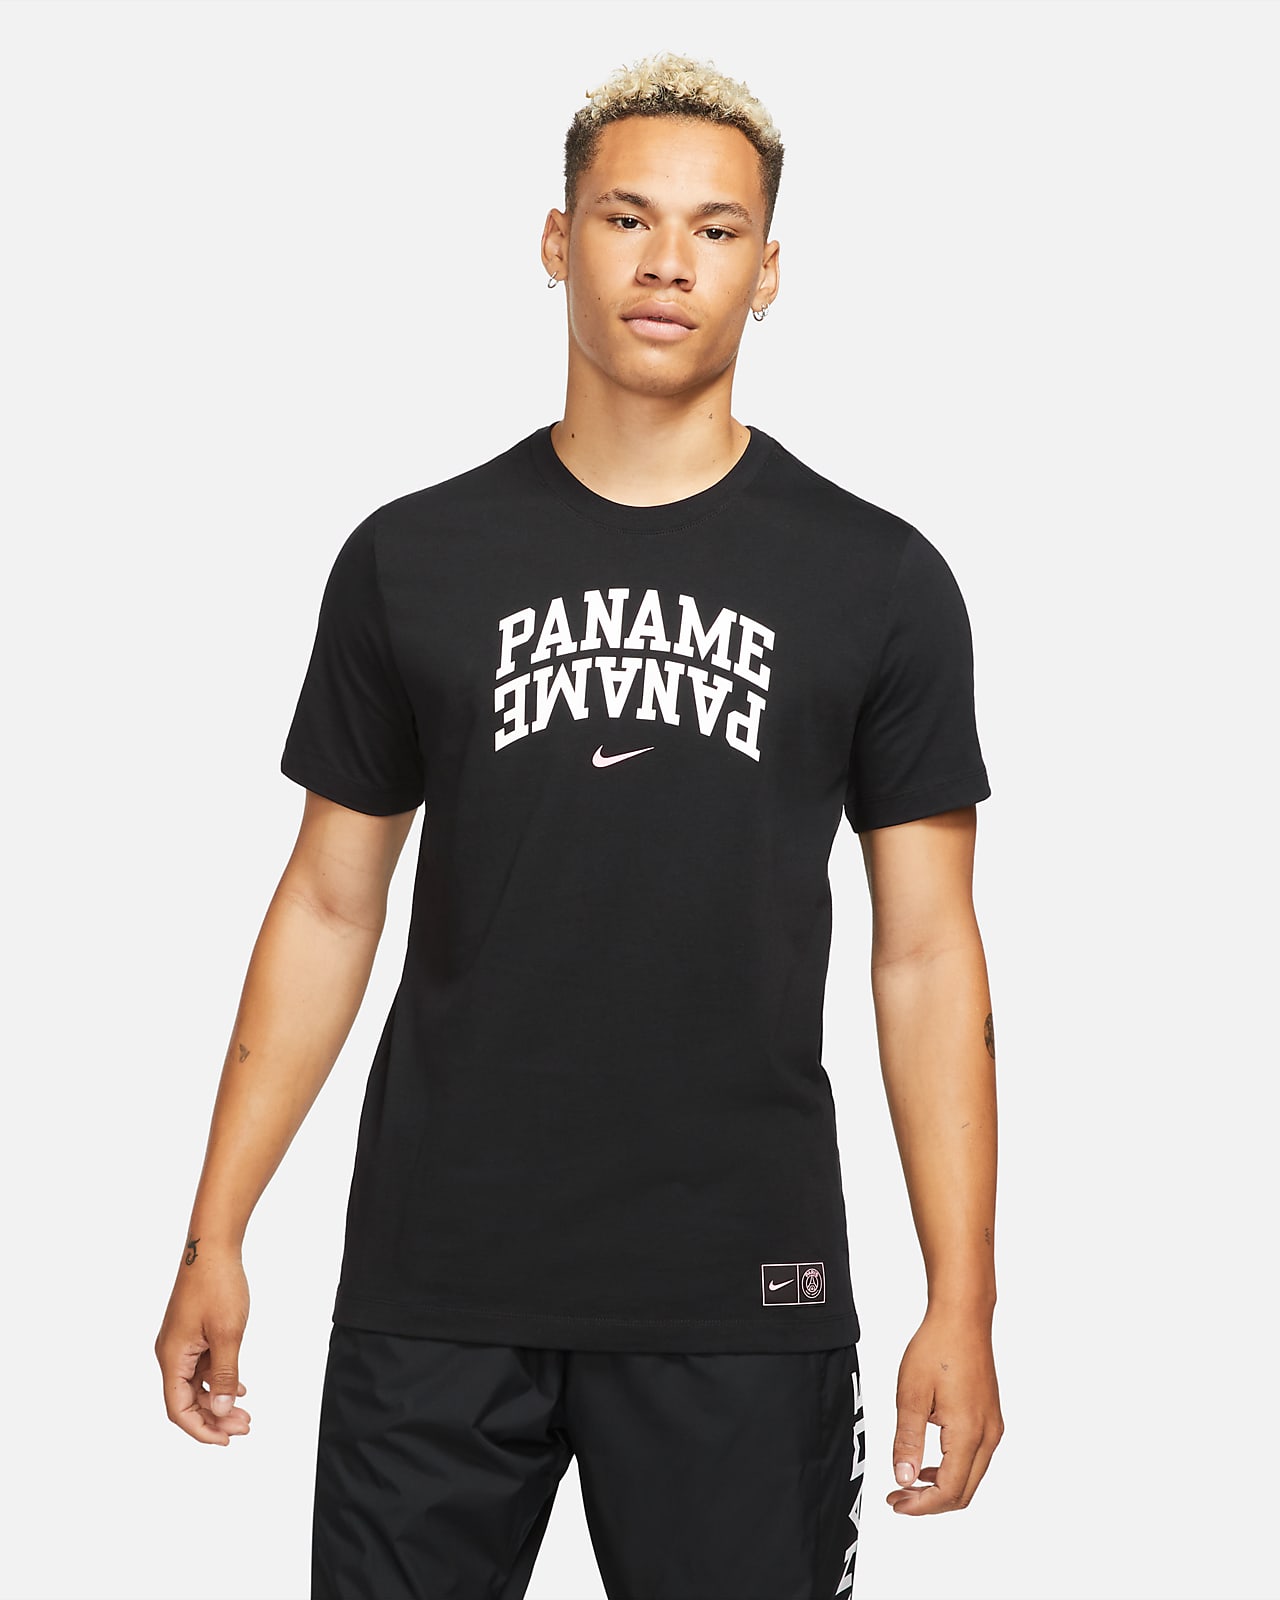 Paris Saint-Germain Men's Football T-Shirt